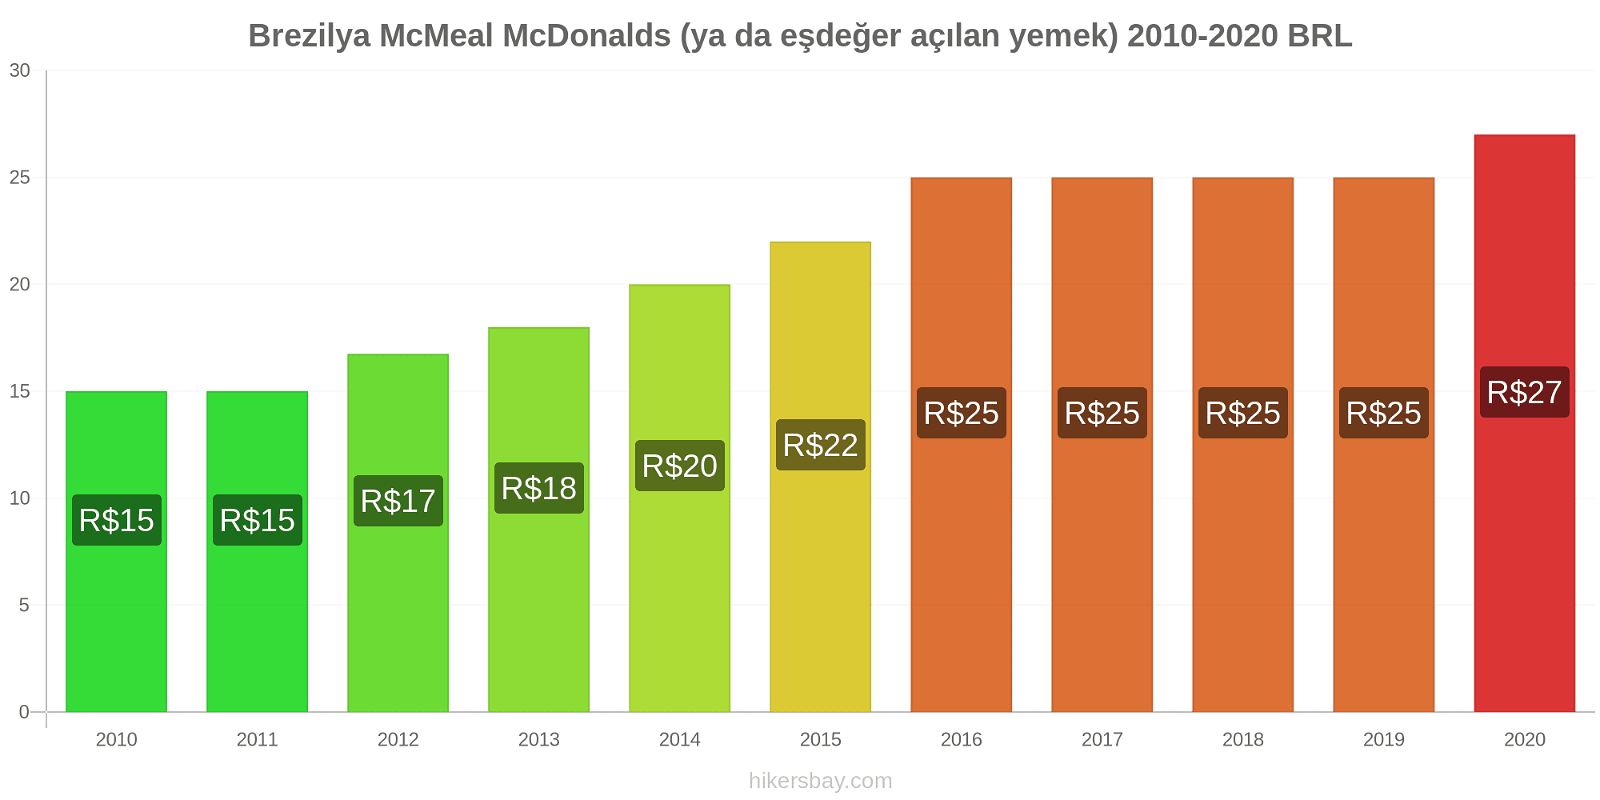 Brezilya fiyat değişiklikleri McMeal McDonalds (ya da eşdeğer açılan yemek) hikersbay.com